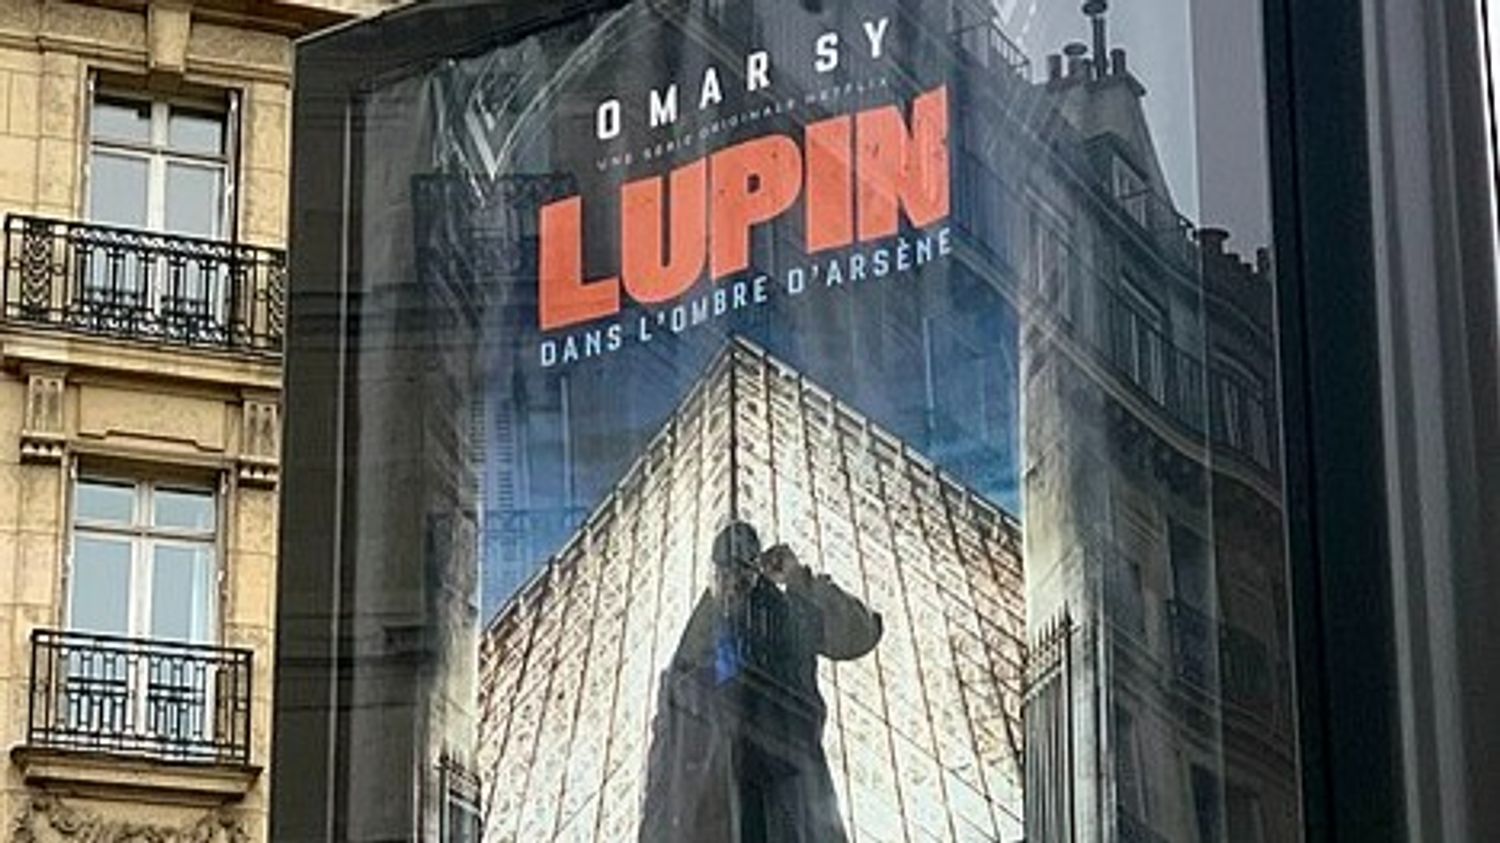 Paris : une centaine de figurants recherchés pour "Lupin" avec Omar Sy